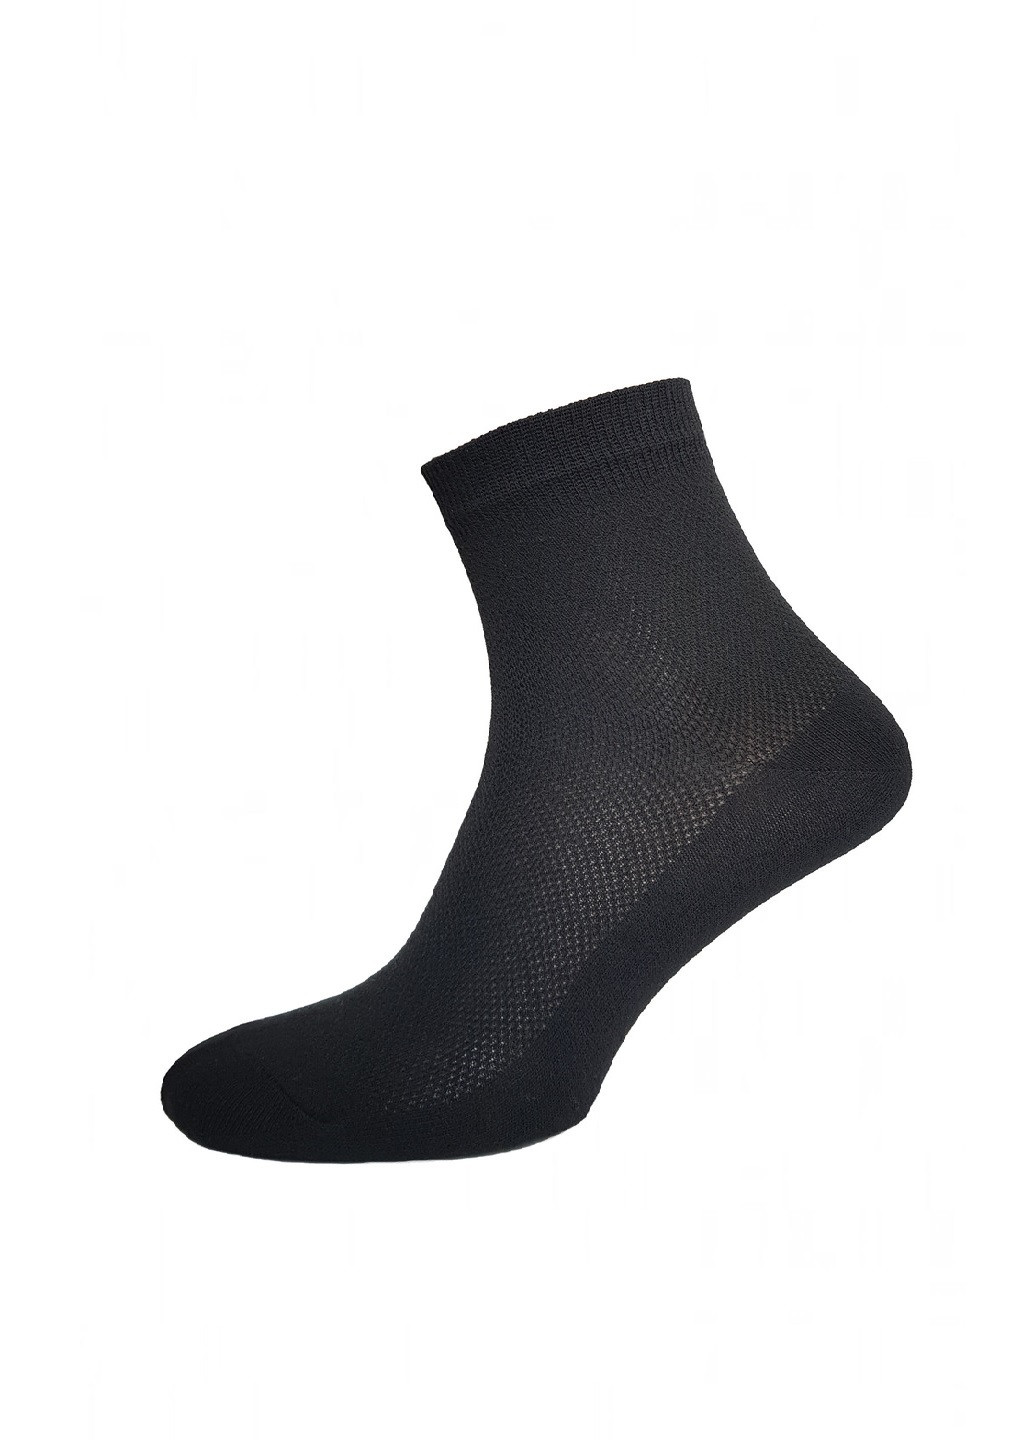 Мужские носки в сетку Nova Classic сетка однотонные чёрные повседневные